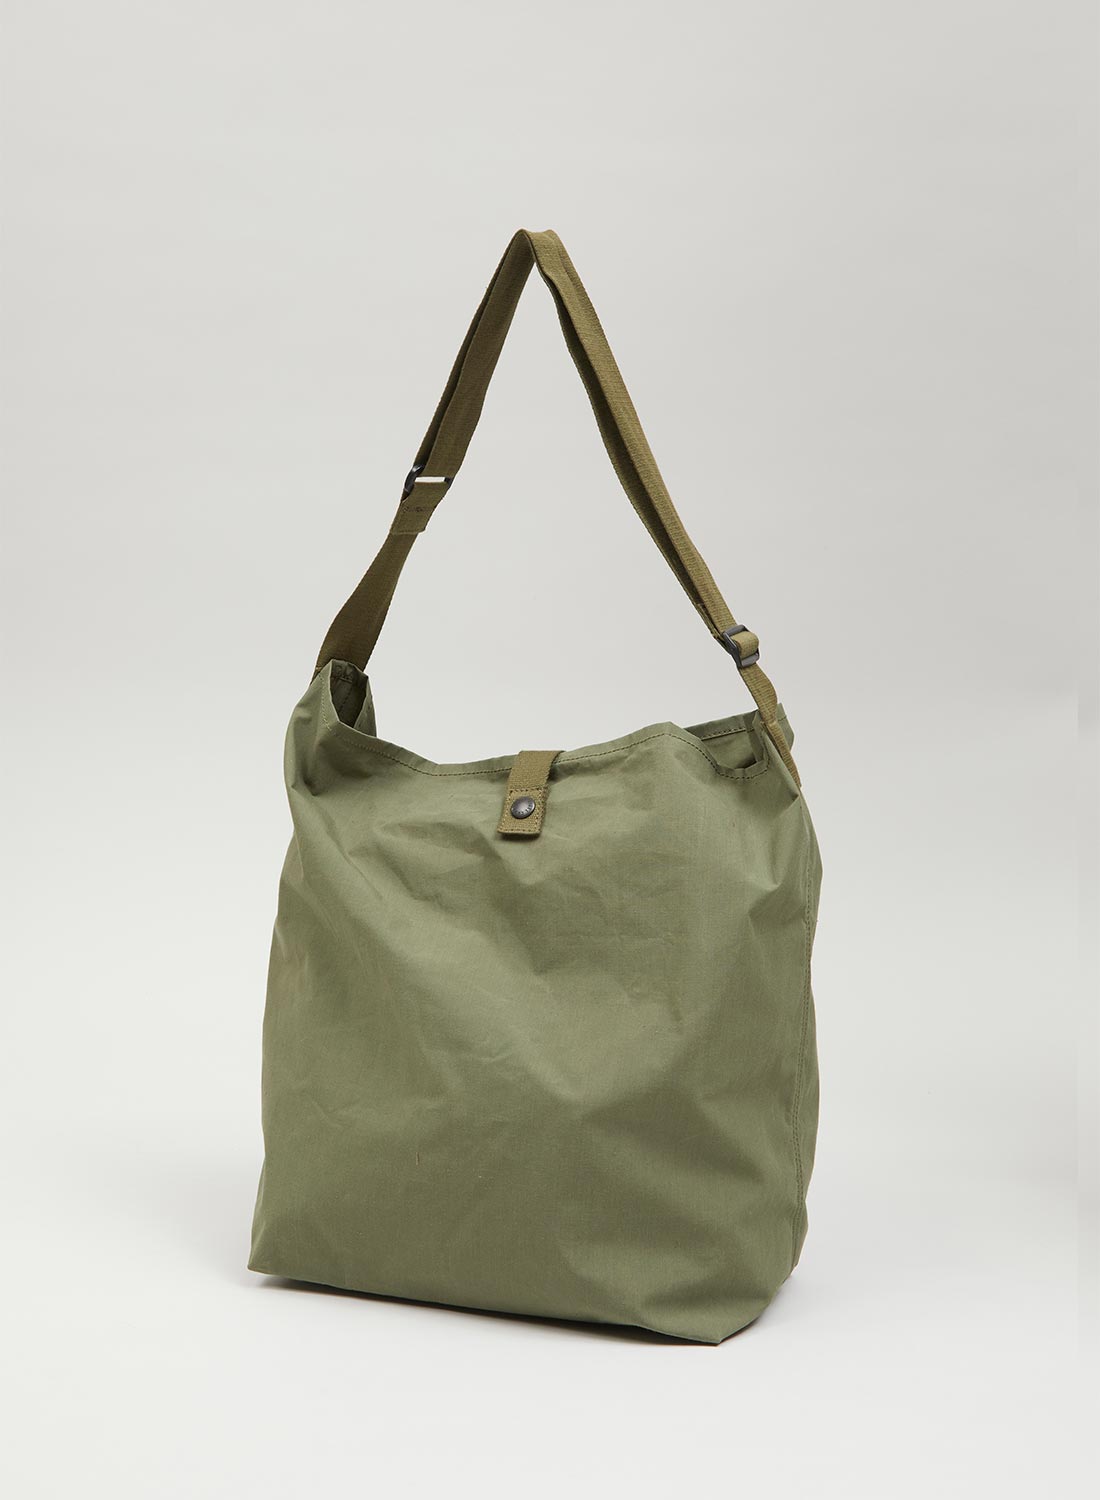 Meteorology Weather Nerd Tote Bag | Zazzle | Nerd tote bags, Tote bag, Bags